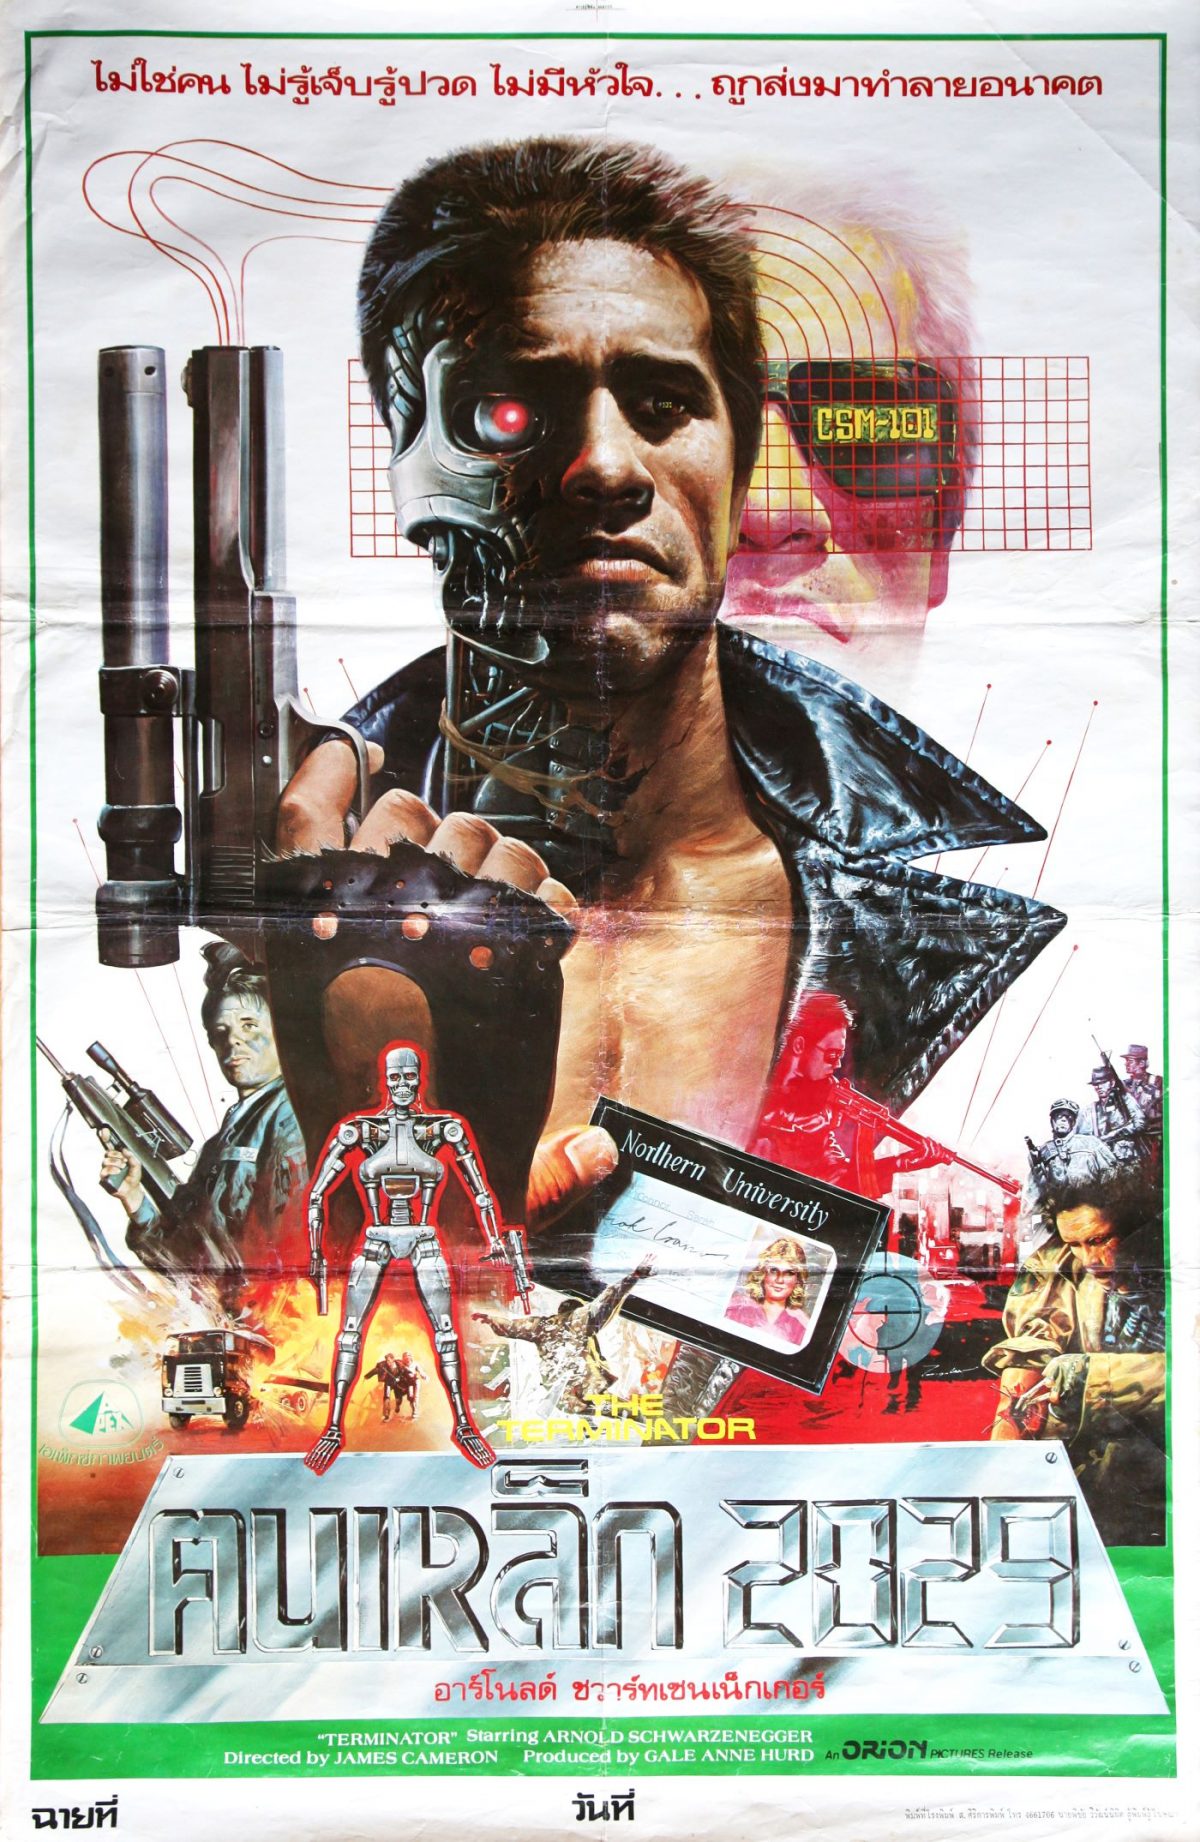 Thailand, movie posters, artwork, Terminator, Arnold Schwarzenegger